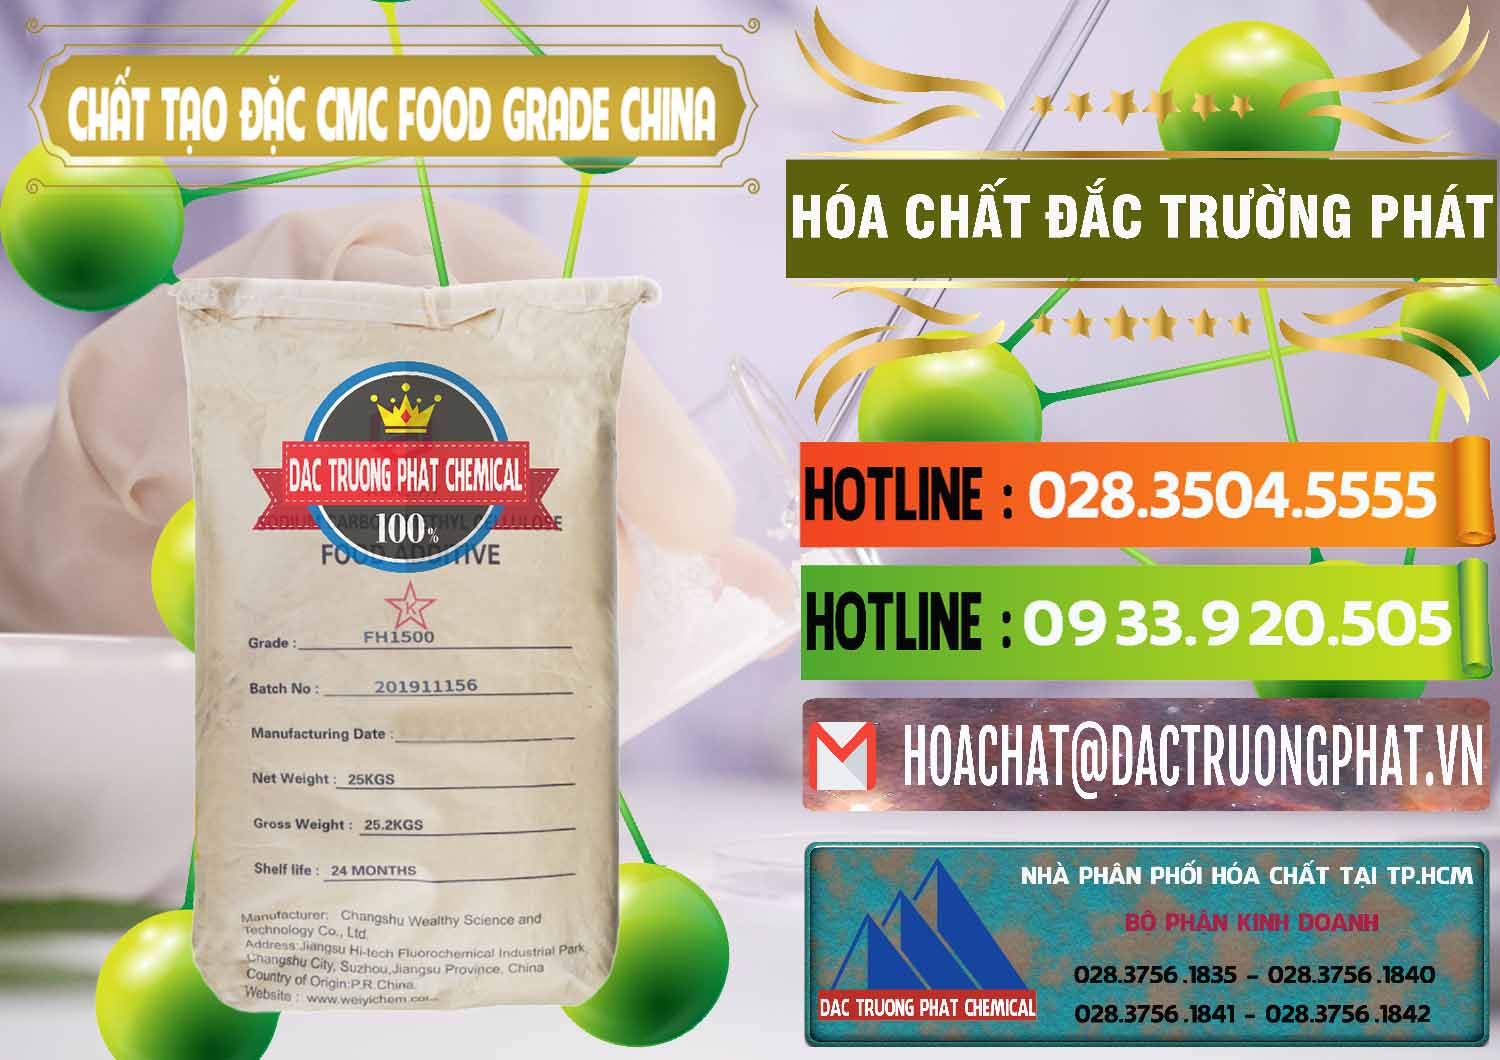 Công ty chuyên kinh doanh - bán Chất Tạo Đặc CMC Wealthy Food Grade Trung Quốc China - 0426 - Nơi chuyên bán - cung cấp hóa chất tại TP.HCM - cungcaphoachat.com.vn